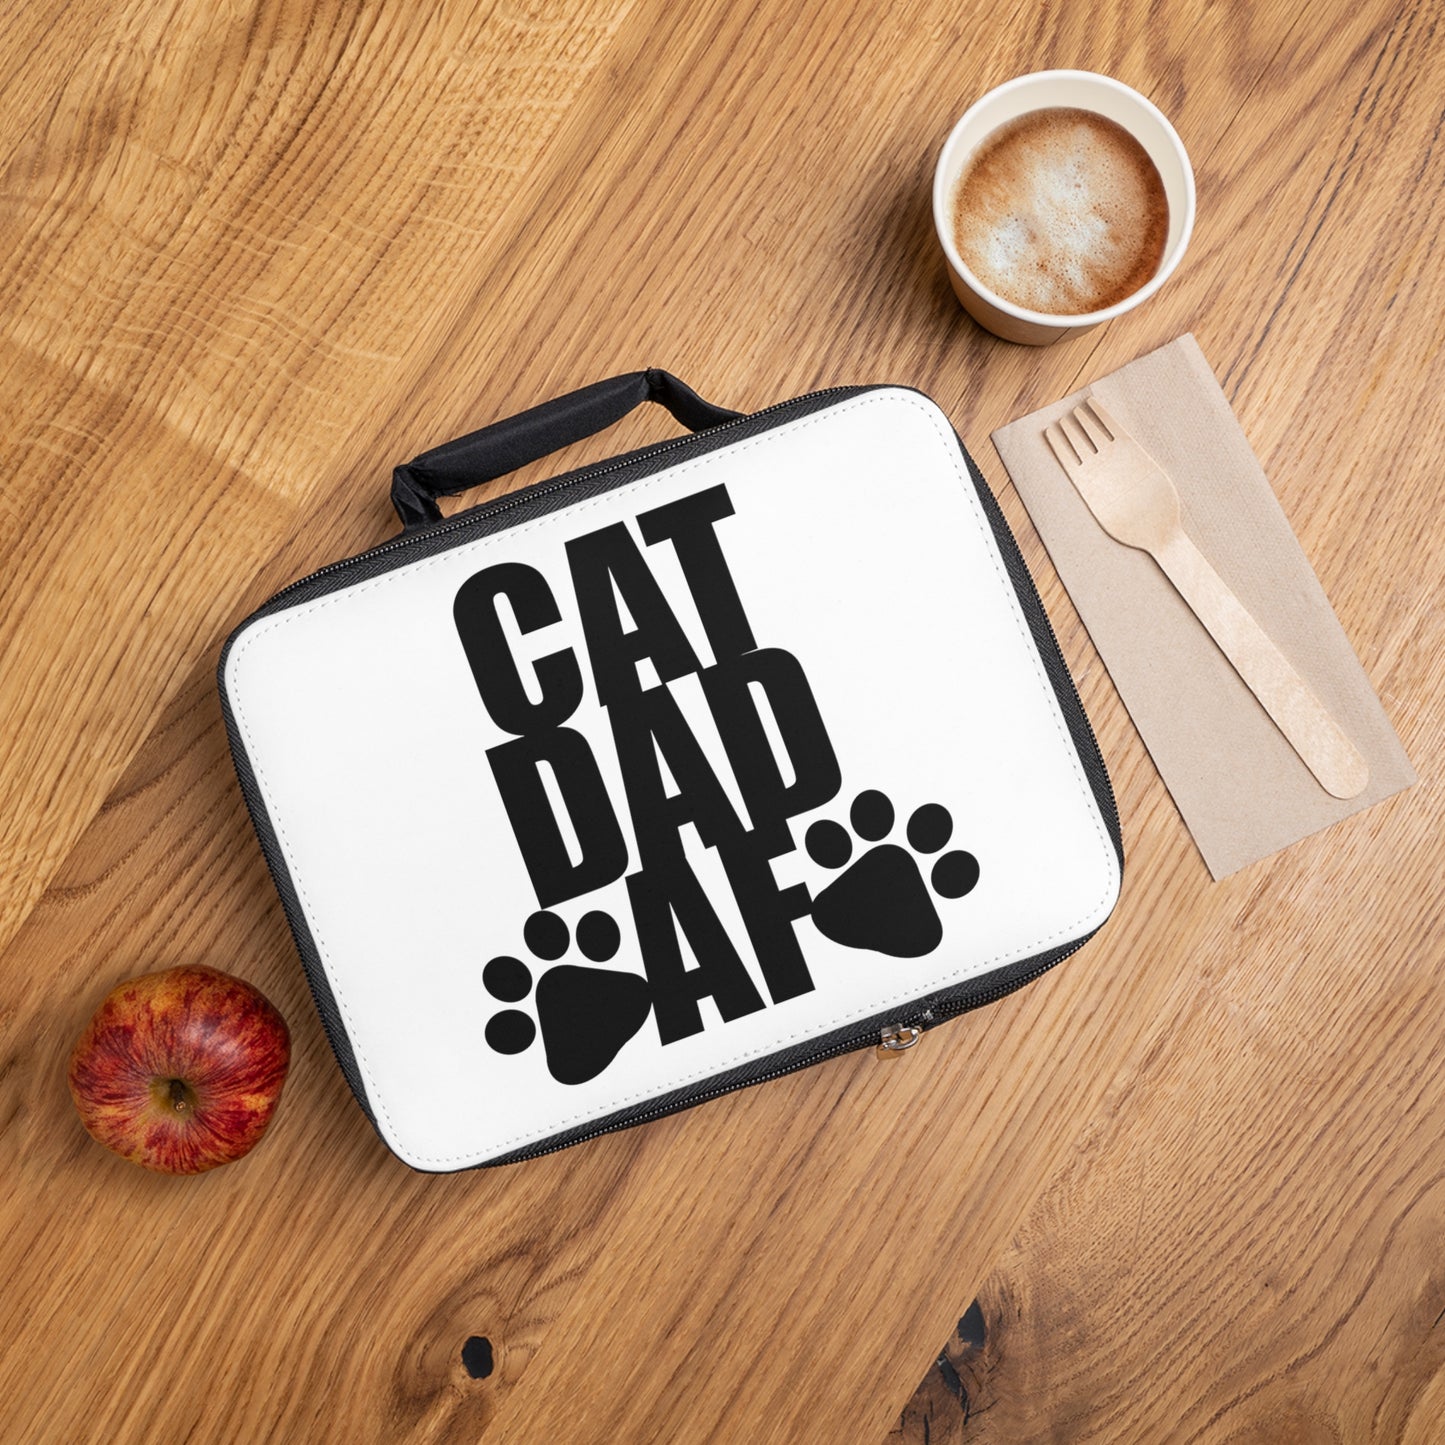 Cat Dad AF Lunch Bag